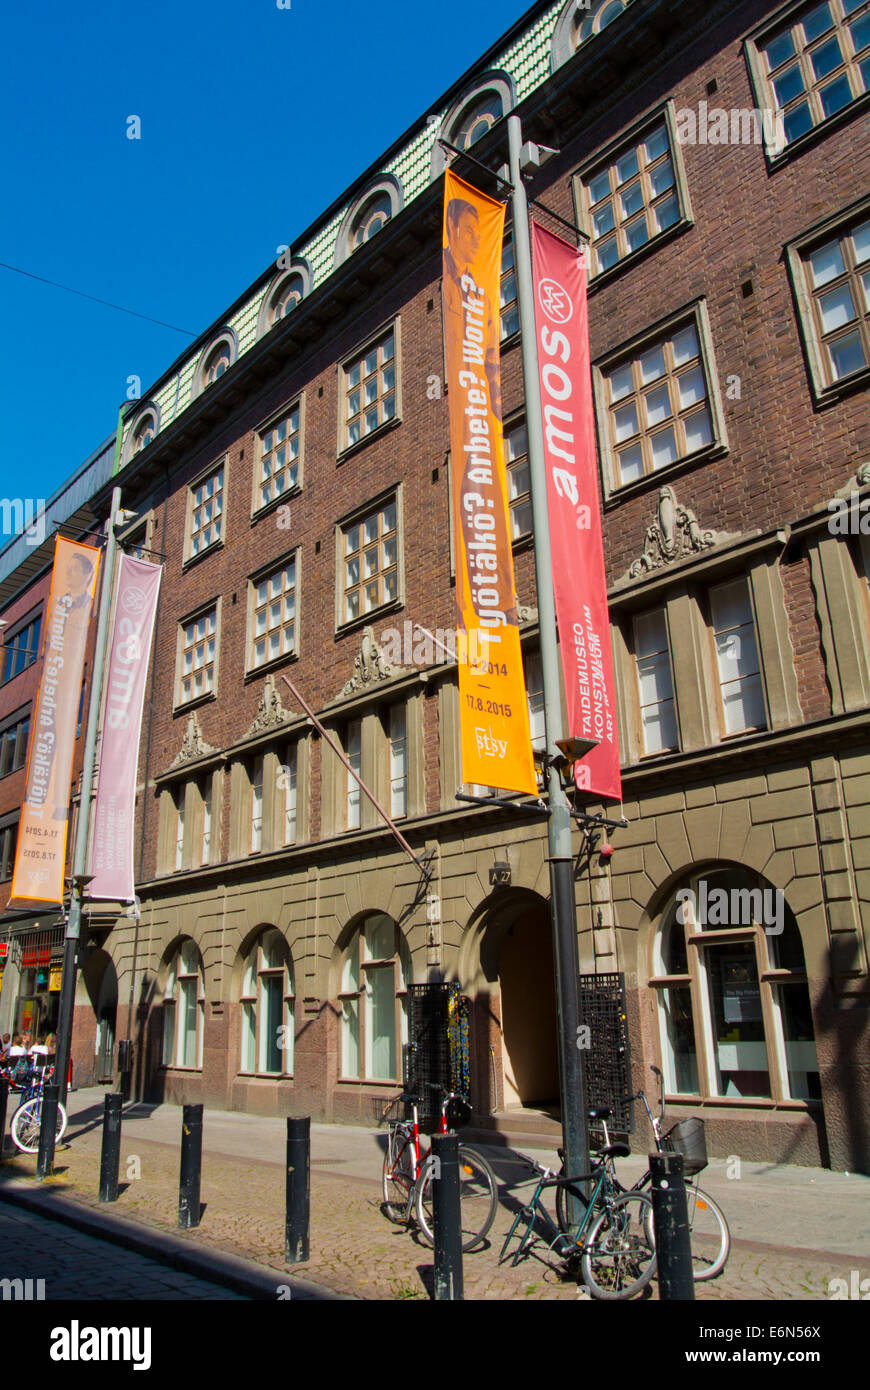 El museo de arte Amos Anderson detrás de forum shopping center, el centro de Helsinki, Finlandia, Europa Foto de stock